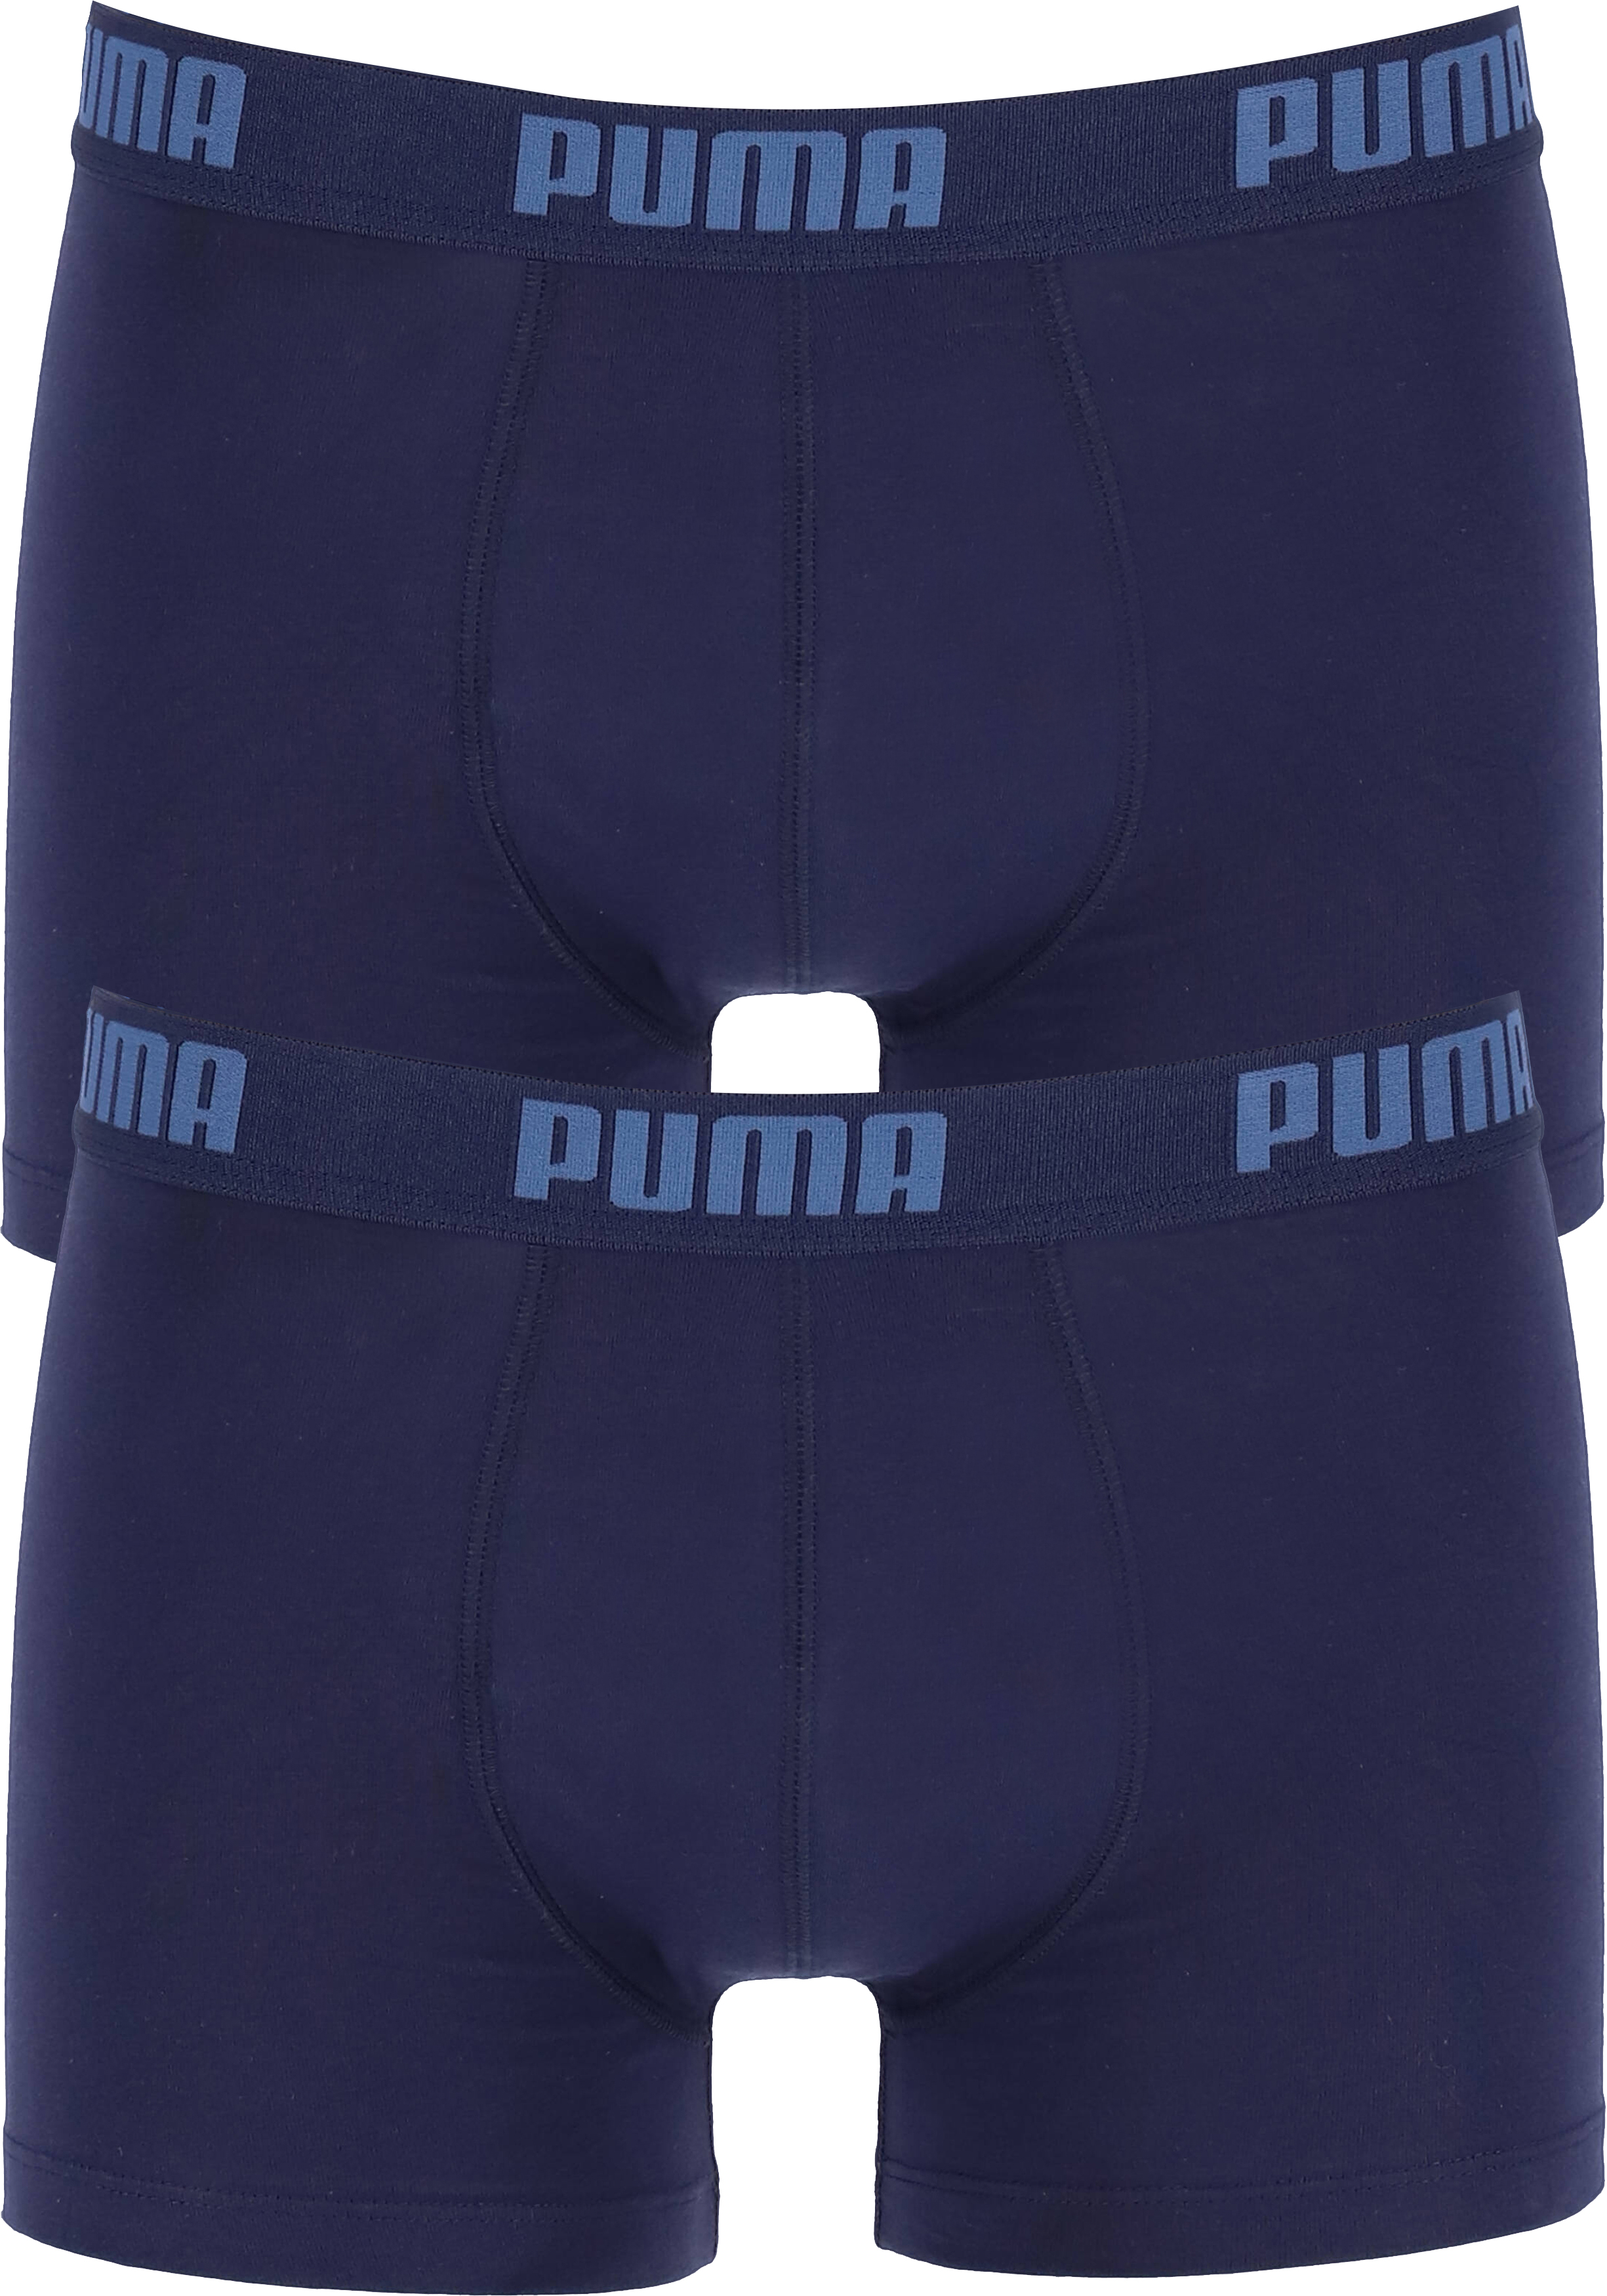 Post Excursie Afstoting Puma Basic Boxer heren (2-pack), navy blauw - Shop de nieuwste voorjaarsmode